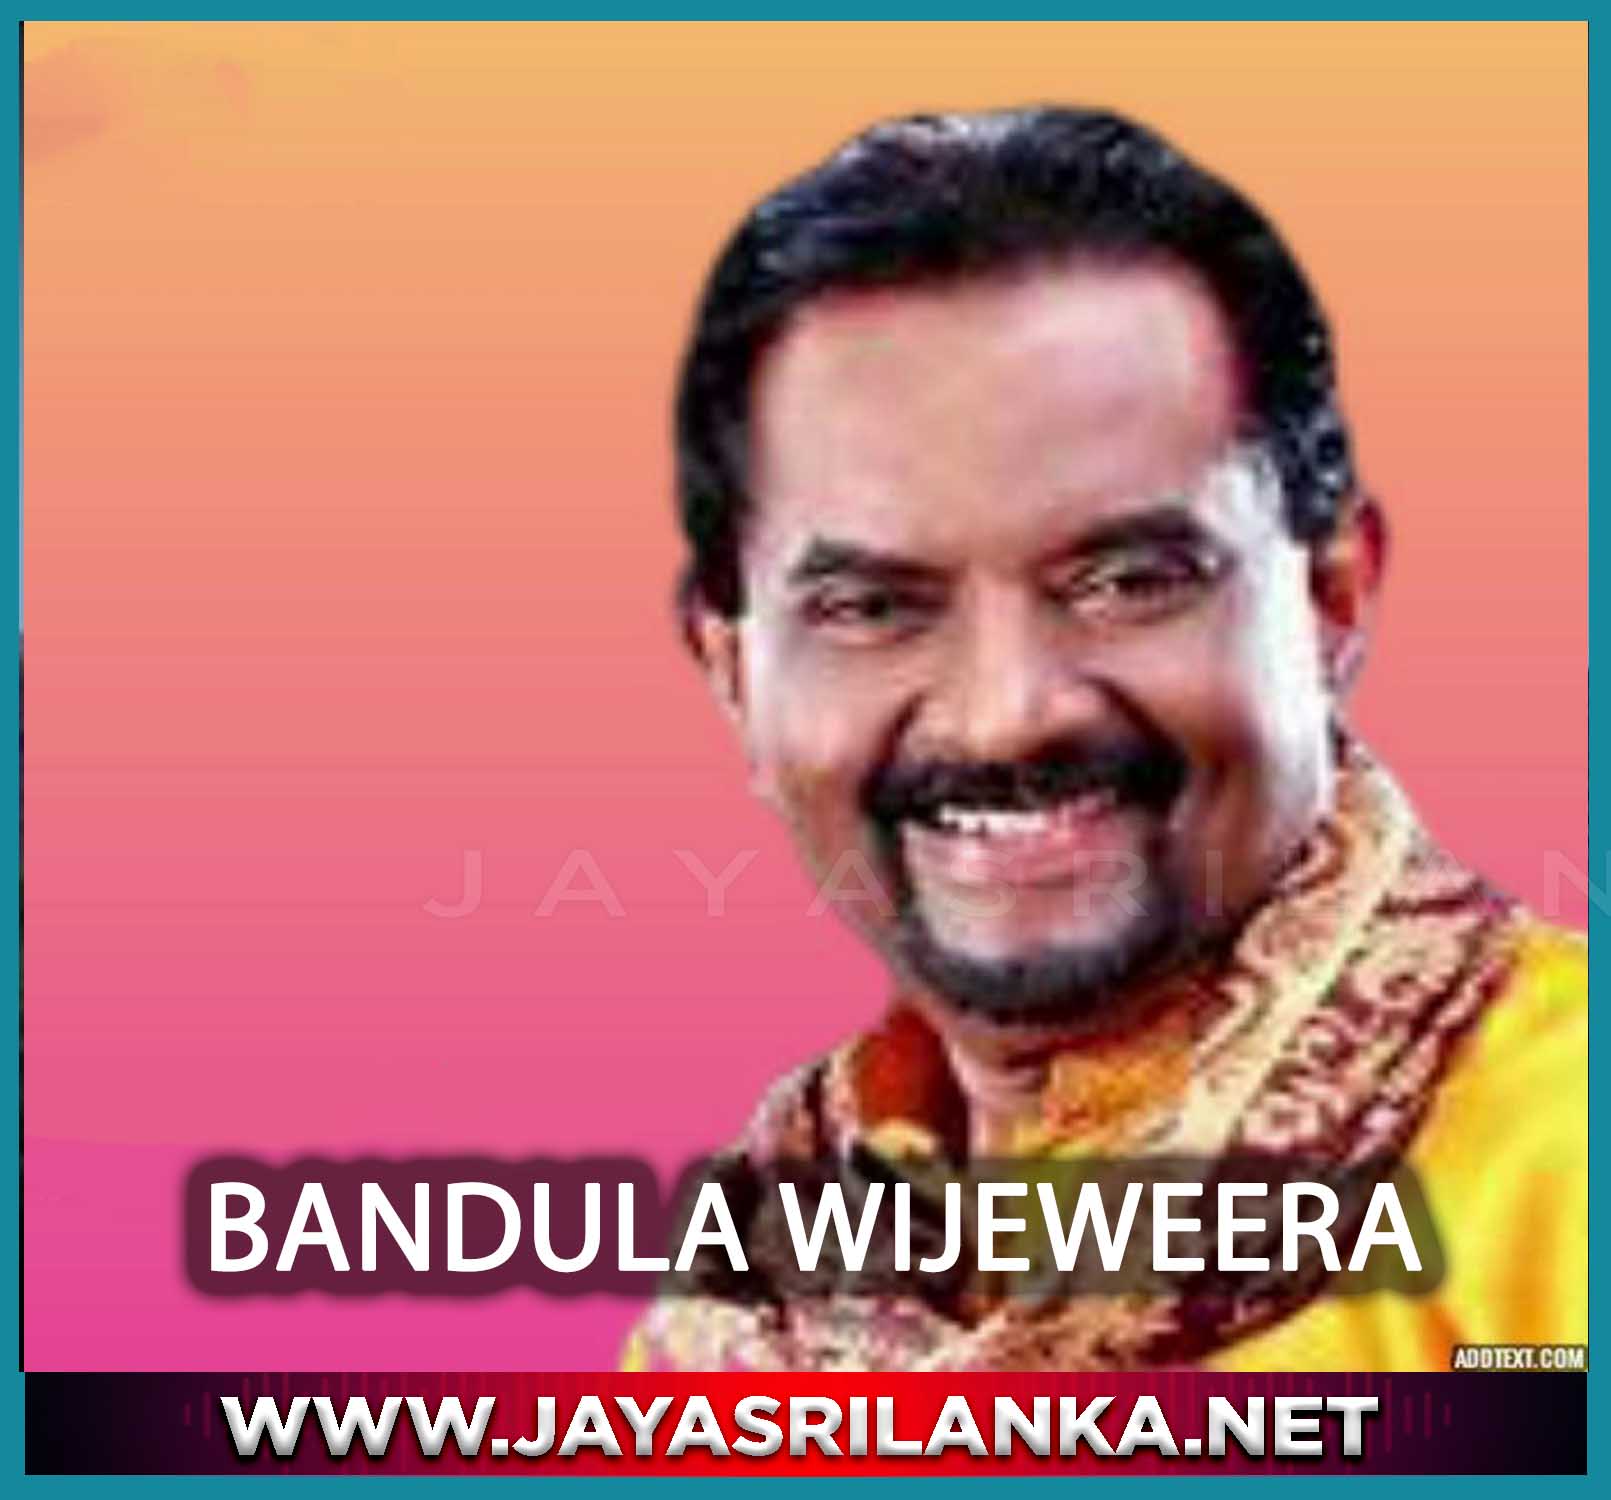 Duppathunge Ge Dorakada - Bandula Wijeweera mp3 Image